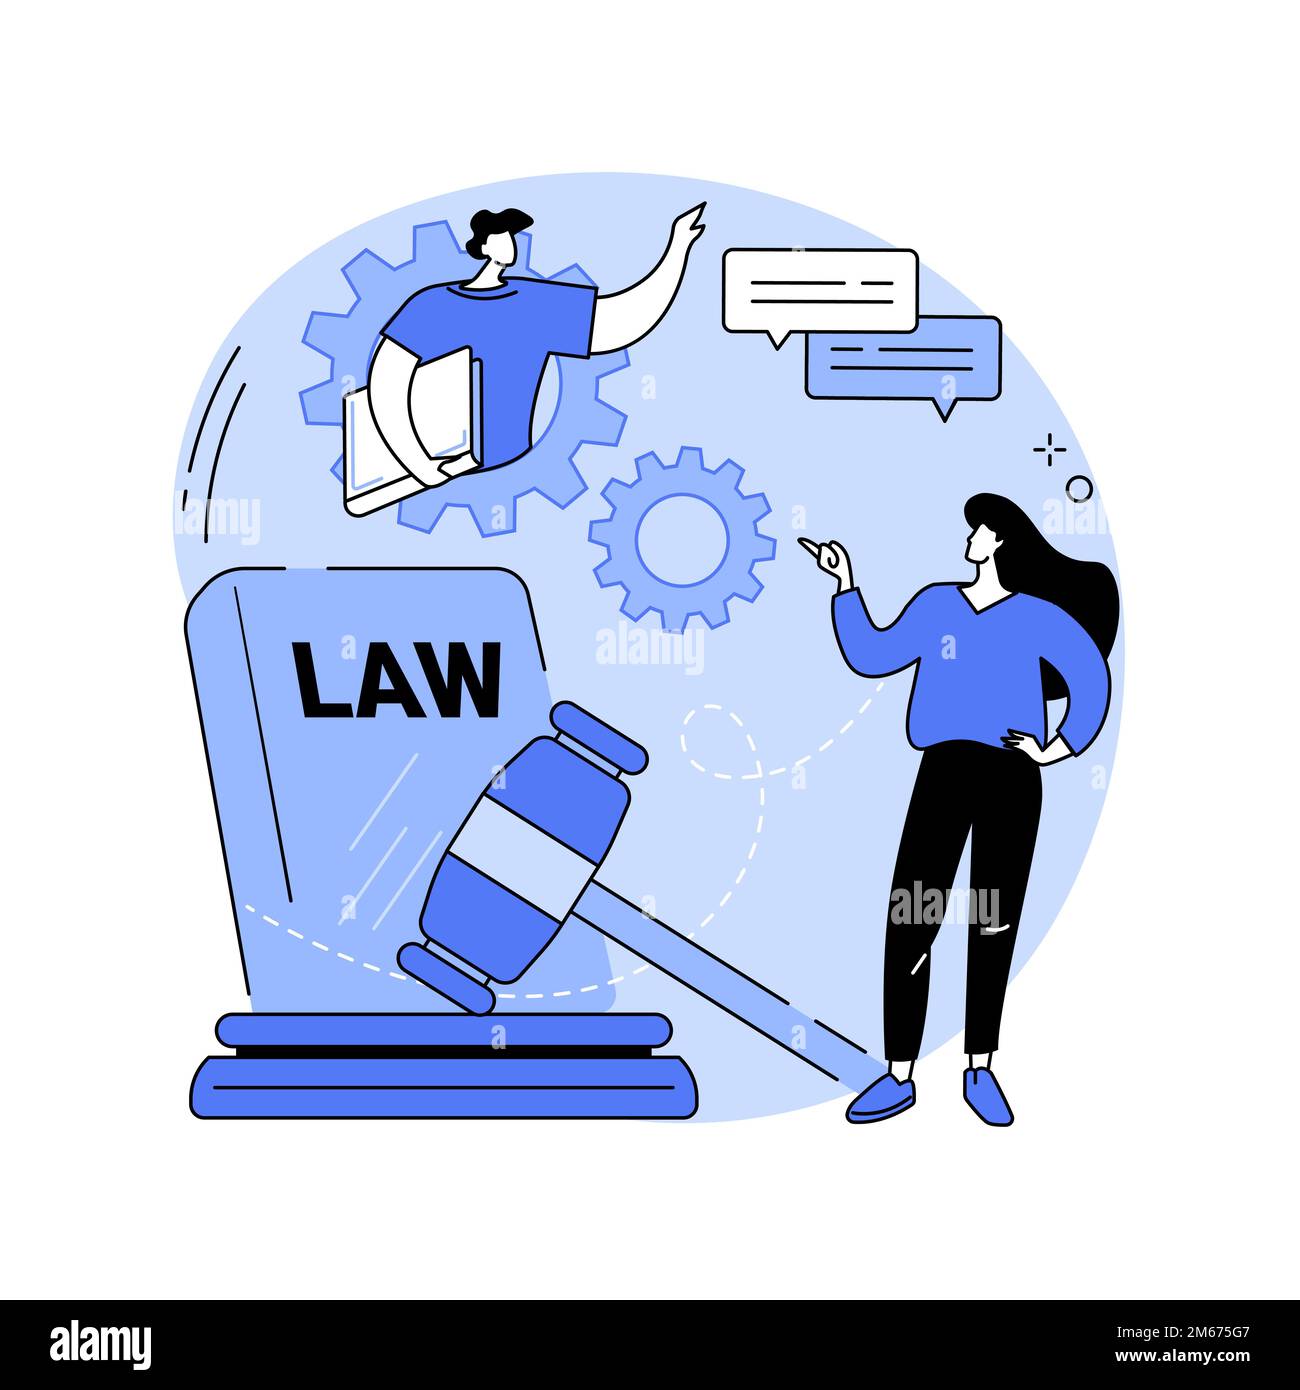 Rechtsstreitigkeiten unterstützen abstrakte Konzept Vektor Illustration. Rechtsanwaltsgehilfe, Prozessanwalt, Rechtsberater, Dokument- und Datenmanagement, Fore Stock Vektor